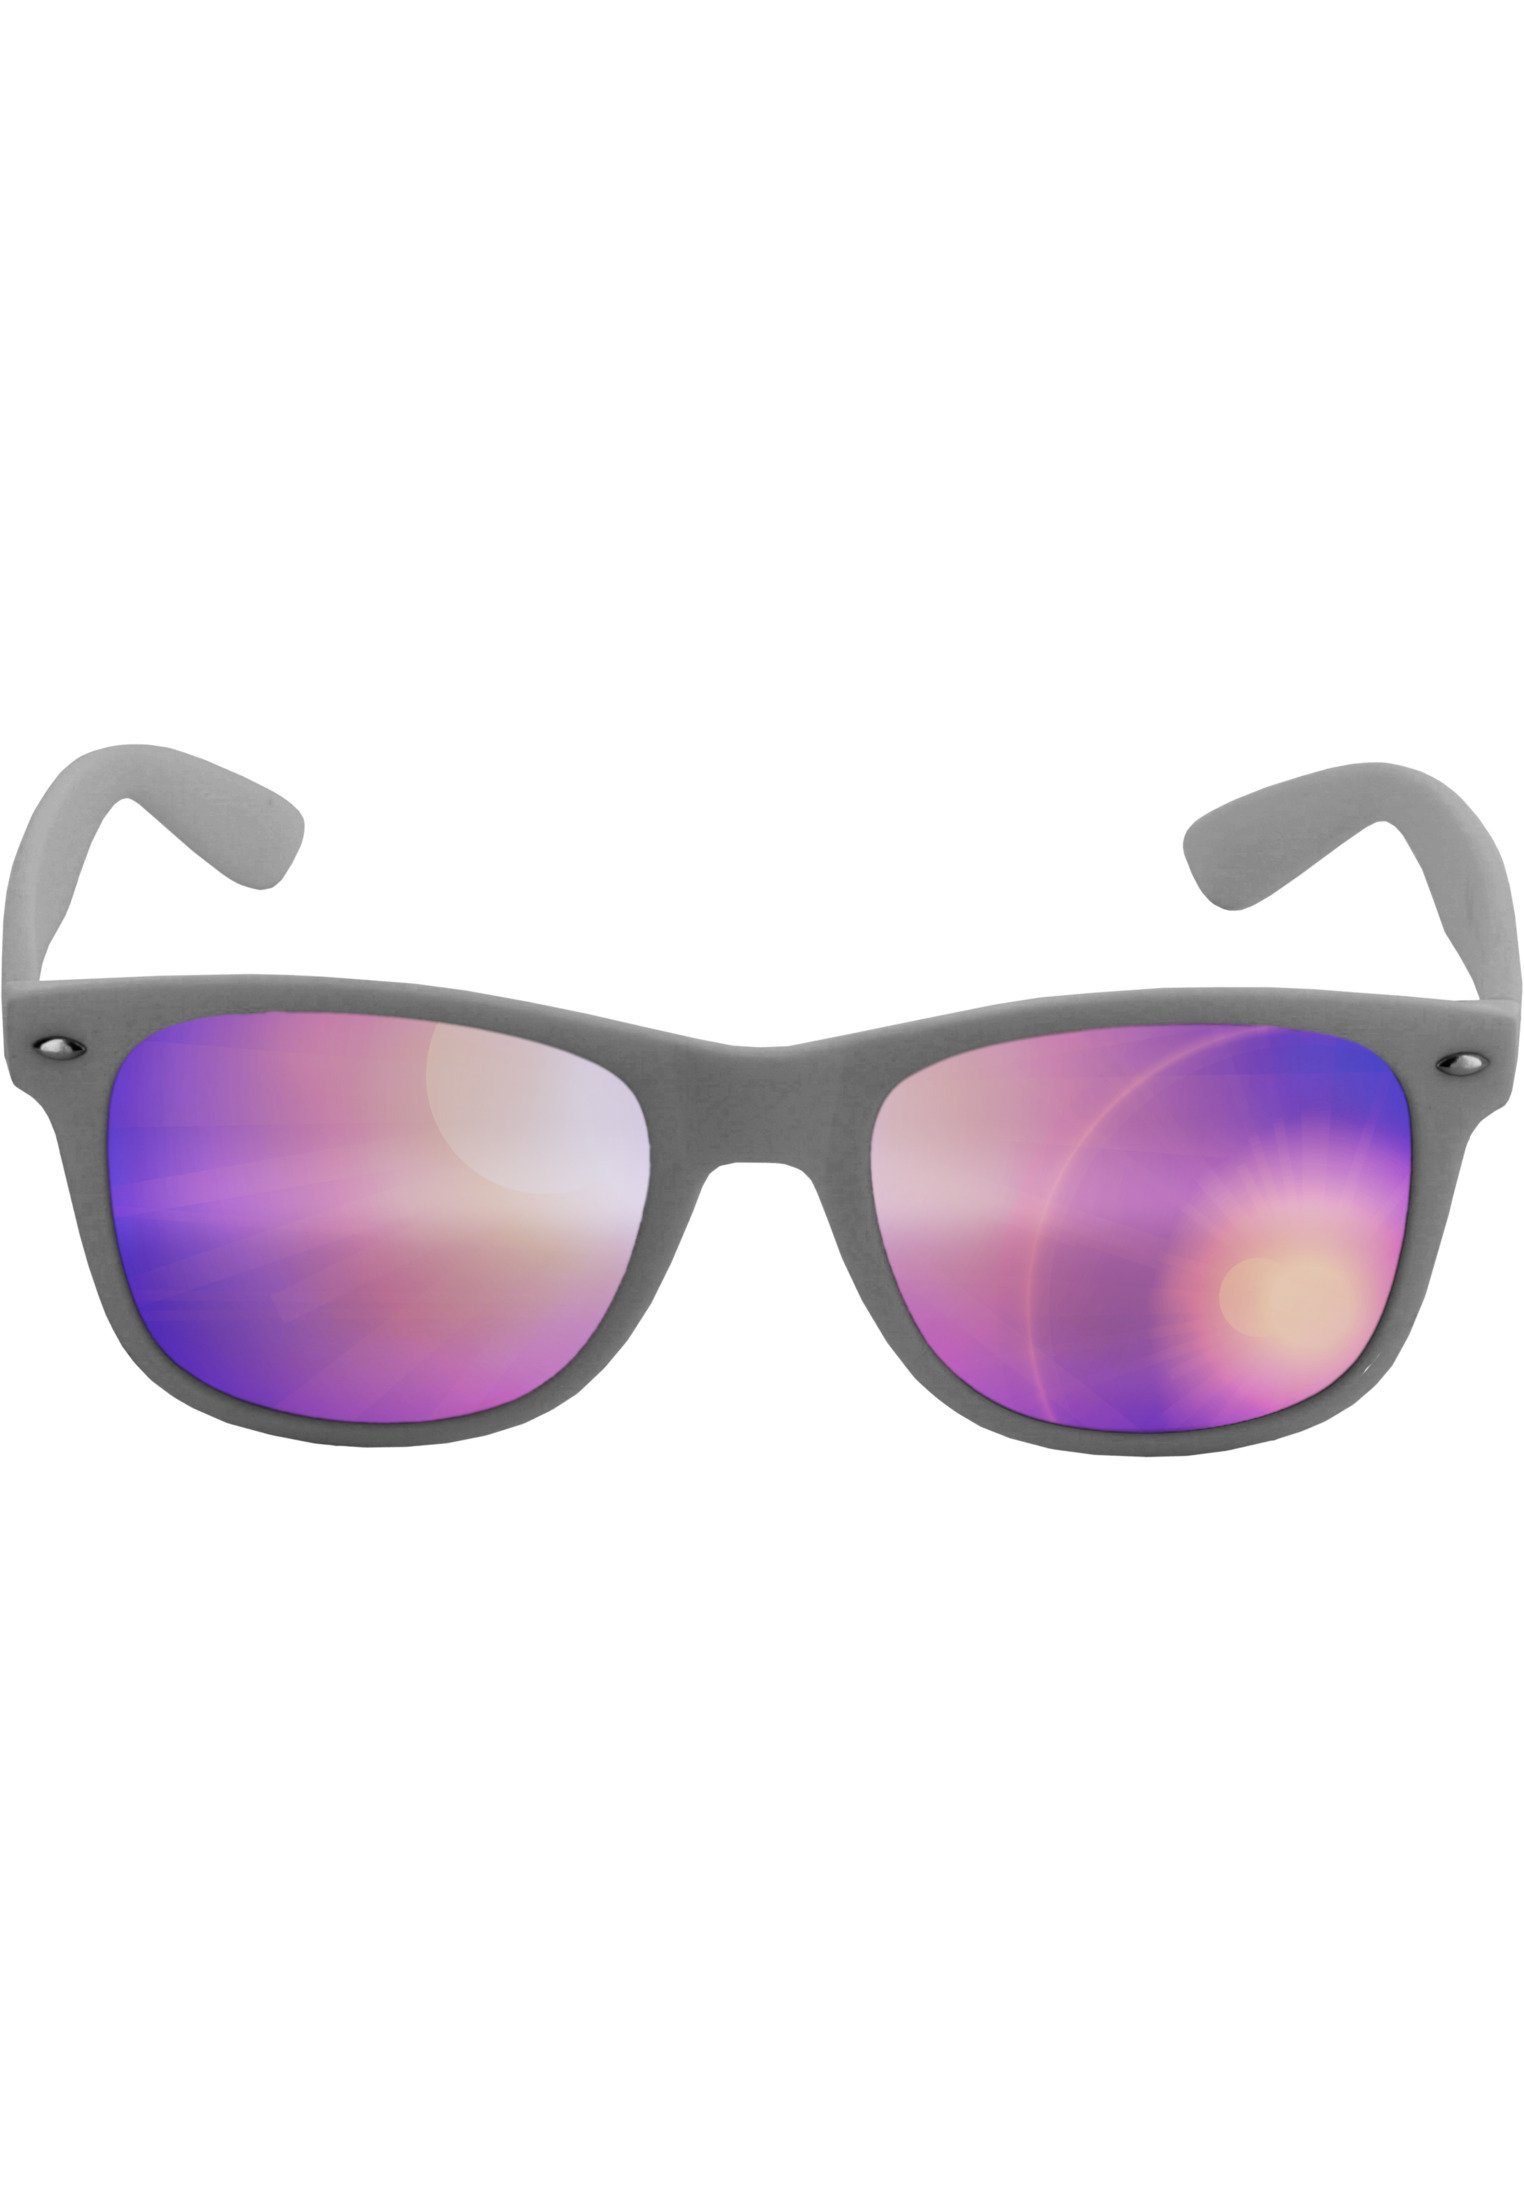 Sunglasses für Mirror, Accessoires auch Sonnenbrille im Likoma MSTRDS Freien Sport Ideal geeignet